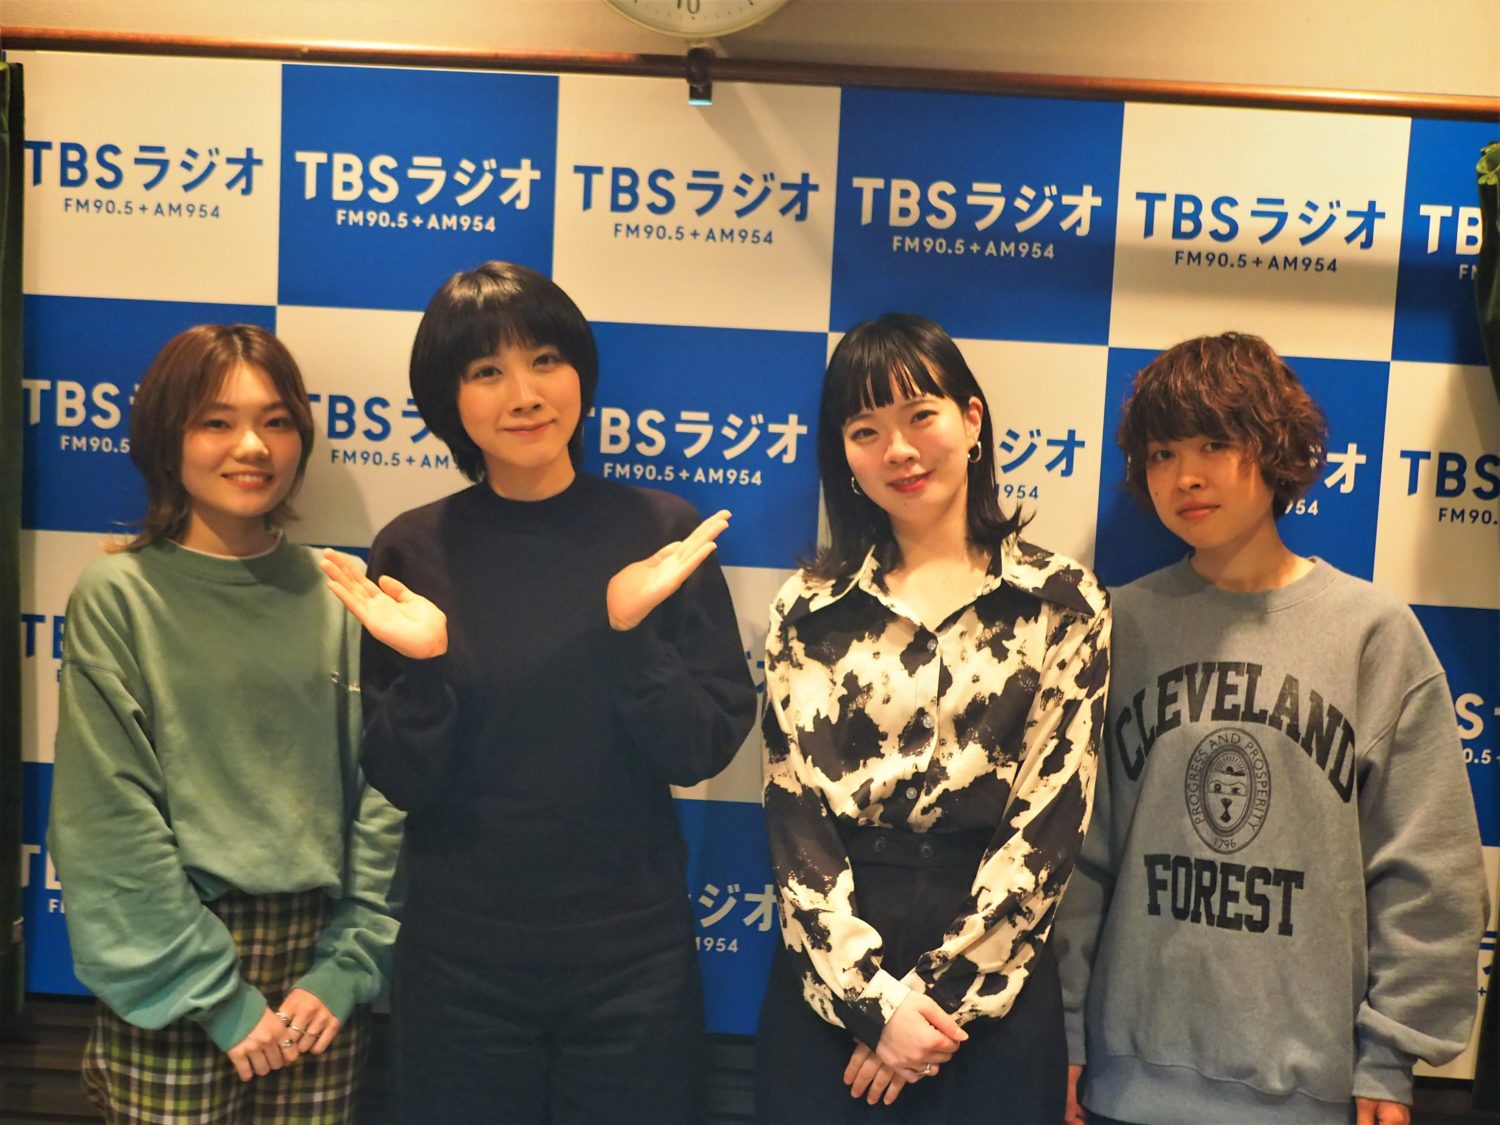 コピーバンドをやりたい。それがSHISHAMOにも返ってくる」ボーカル・宮崎朝子が語った現在の野望 | 無料のアプリでラジオを聴こう！ |  radiko news(ラジコニュース)